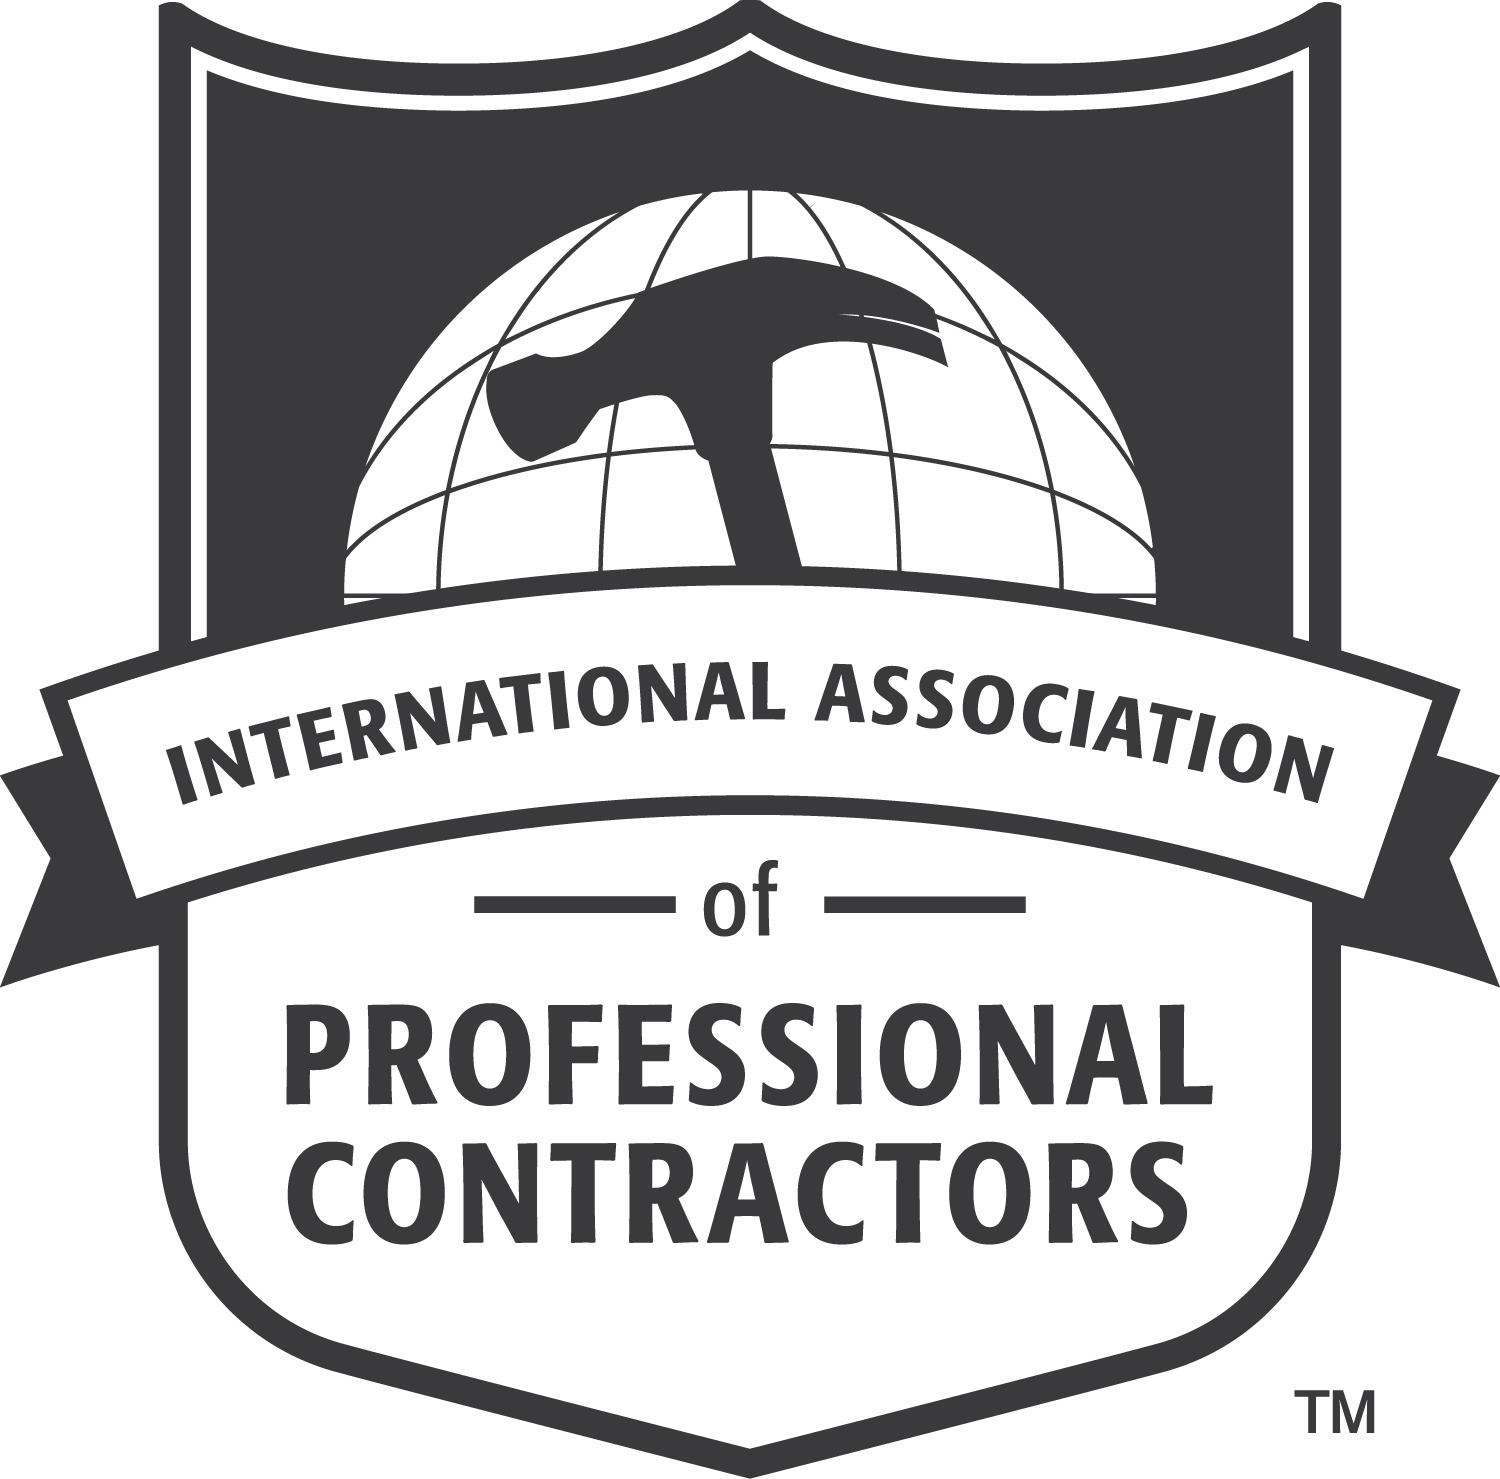 Contractors Logo - Logos – Contractor's Association